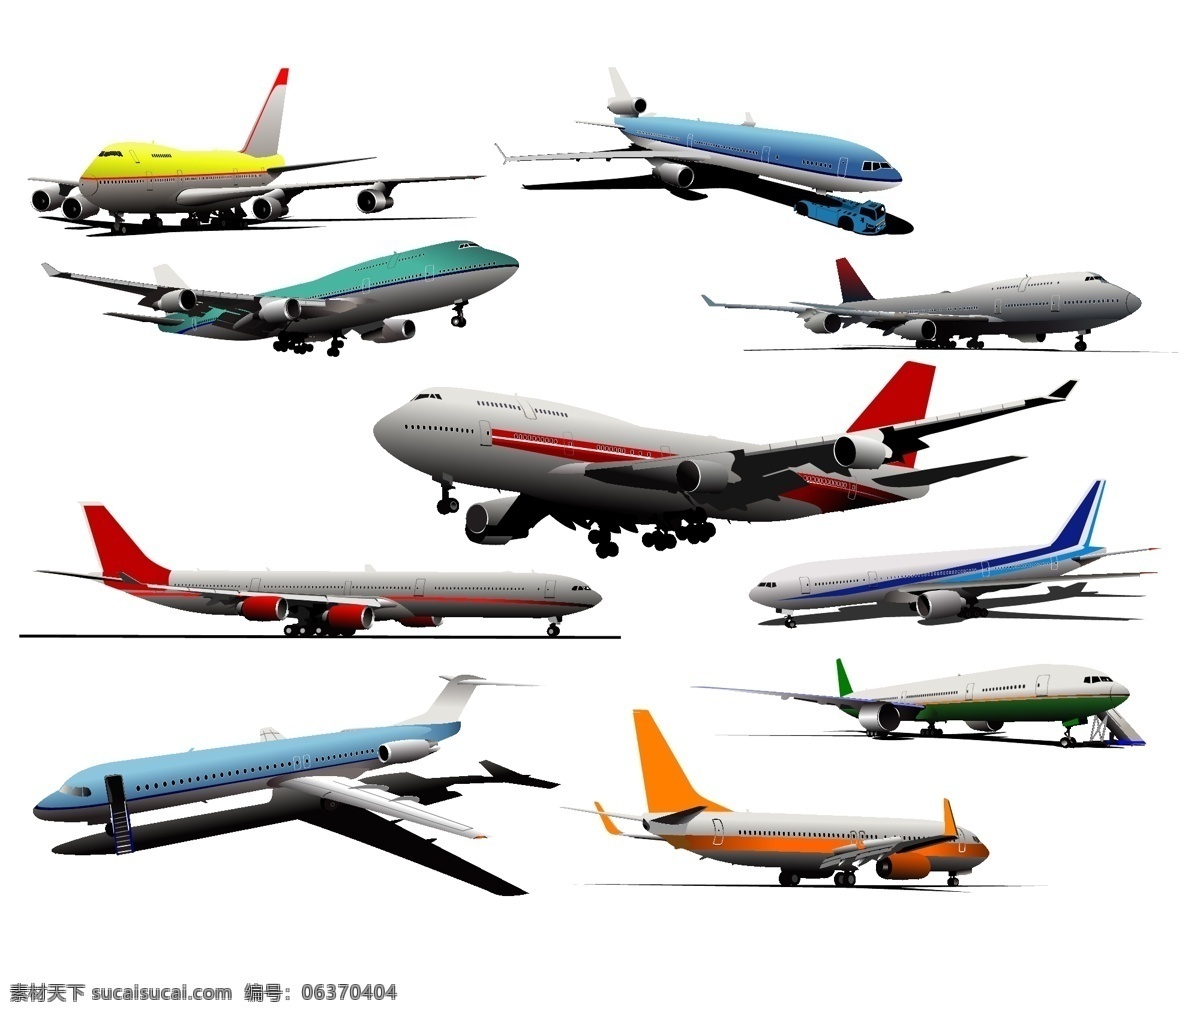 矢量 平面 技术向量 向量交通航模 尾翼 翼帆 矢量图 其他矢量图